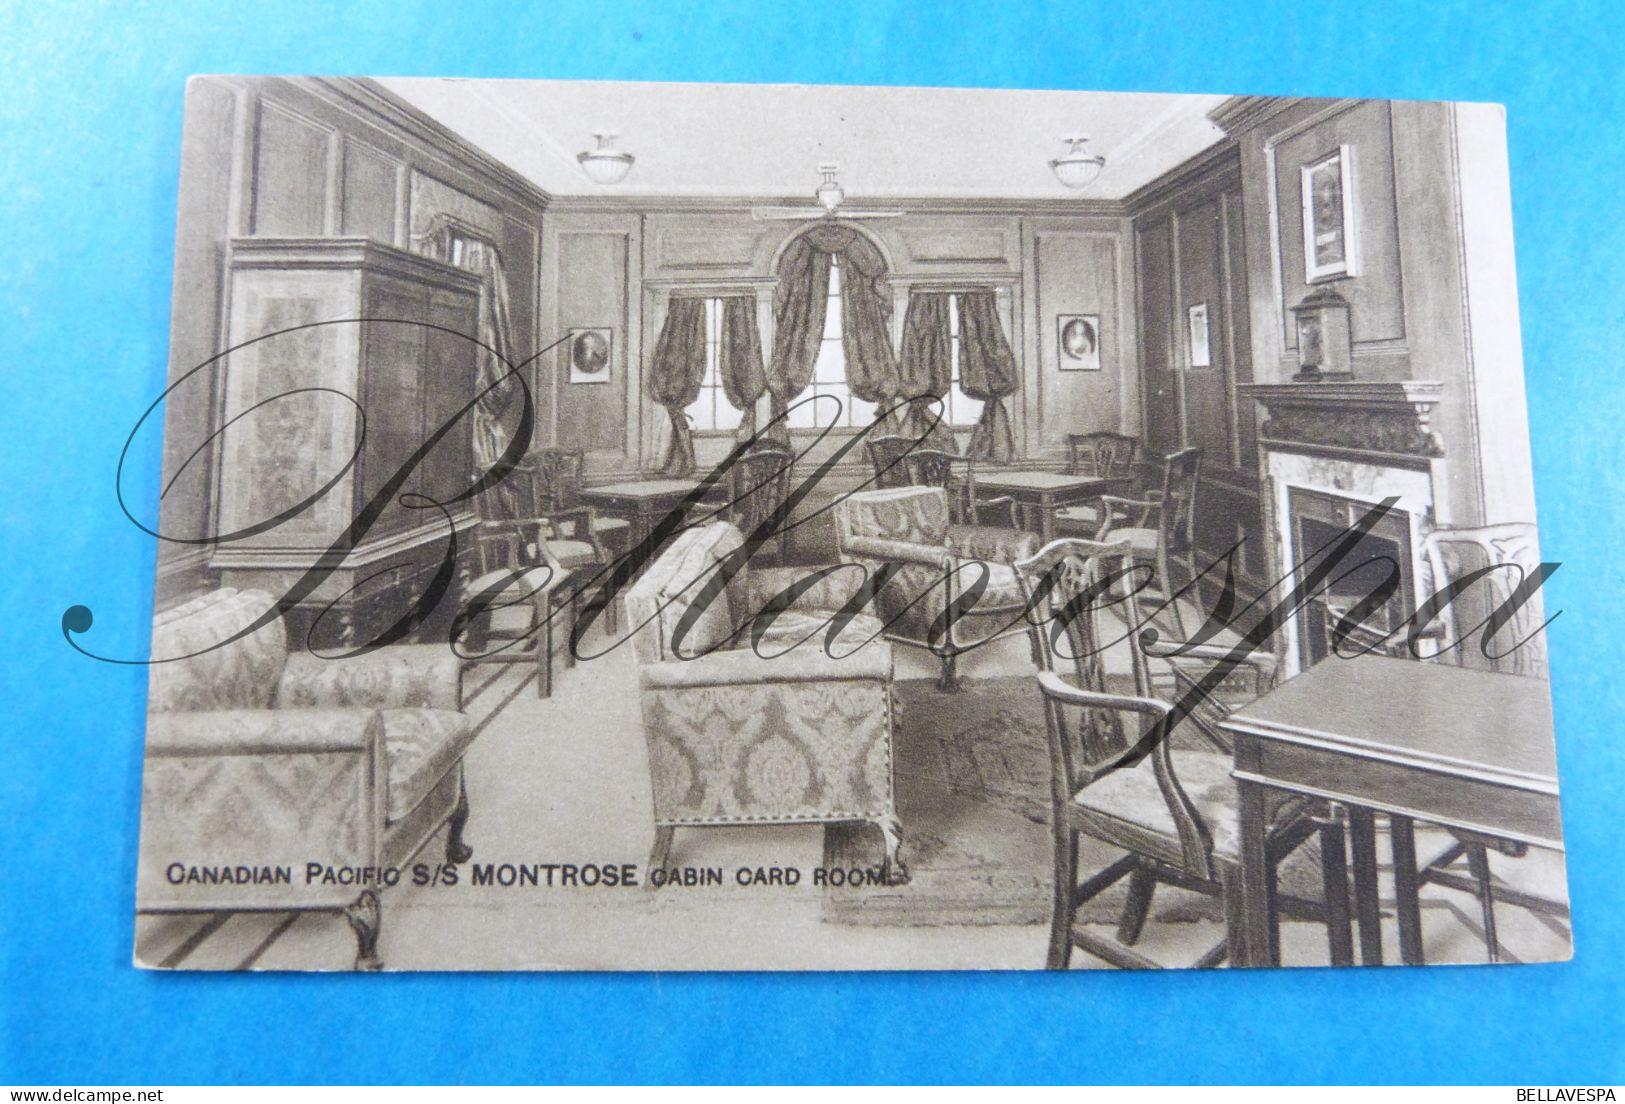 Transatlantic Canadian PAcific S/S MONTROSA   x 11 postcards